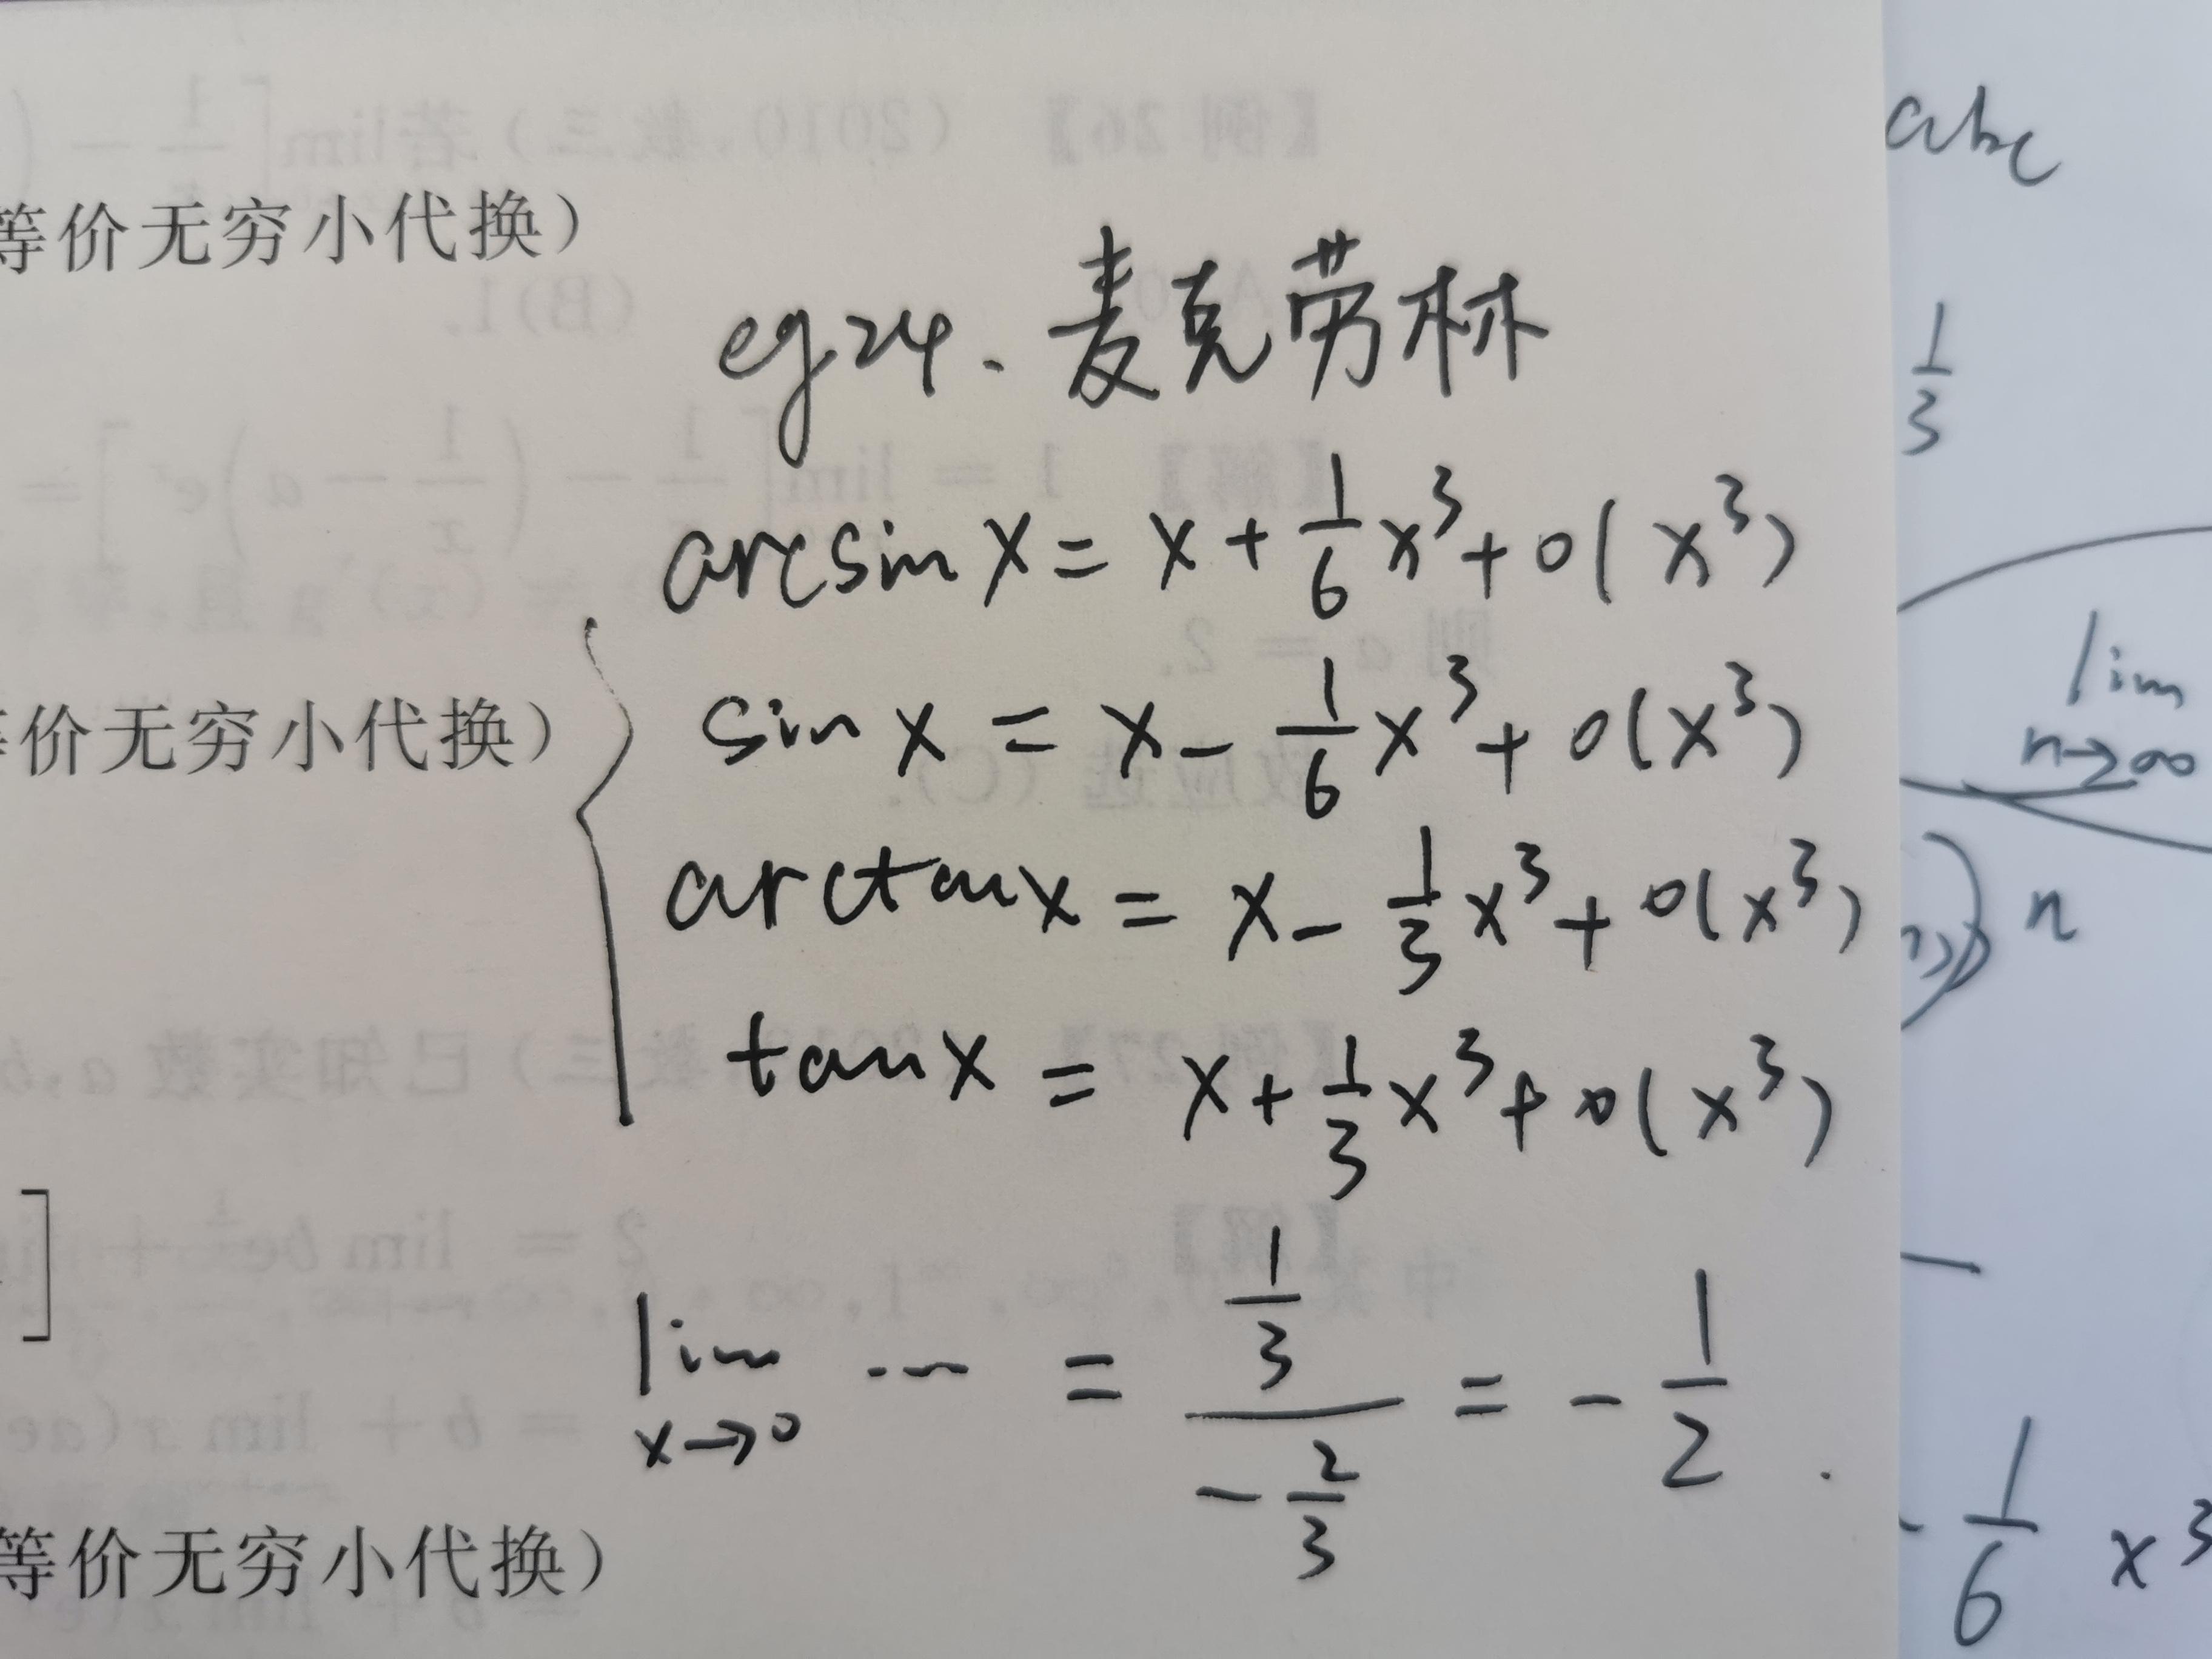 lim(x→0)(arcsinx-sinx)\/(arctanx-tanx)?